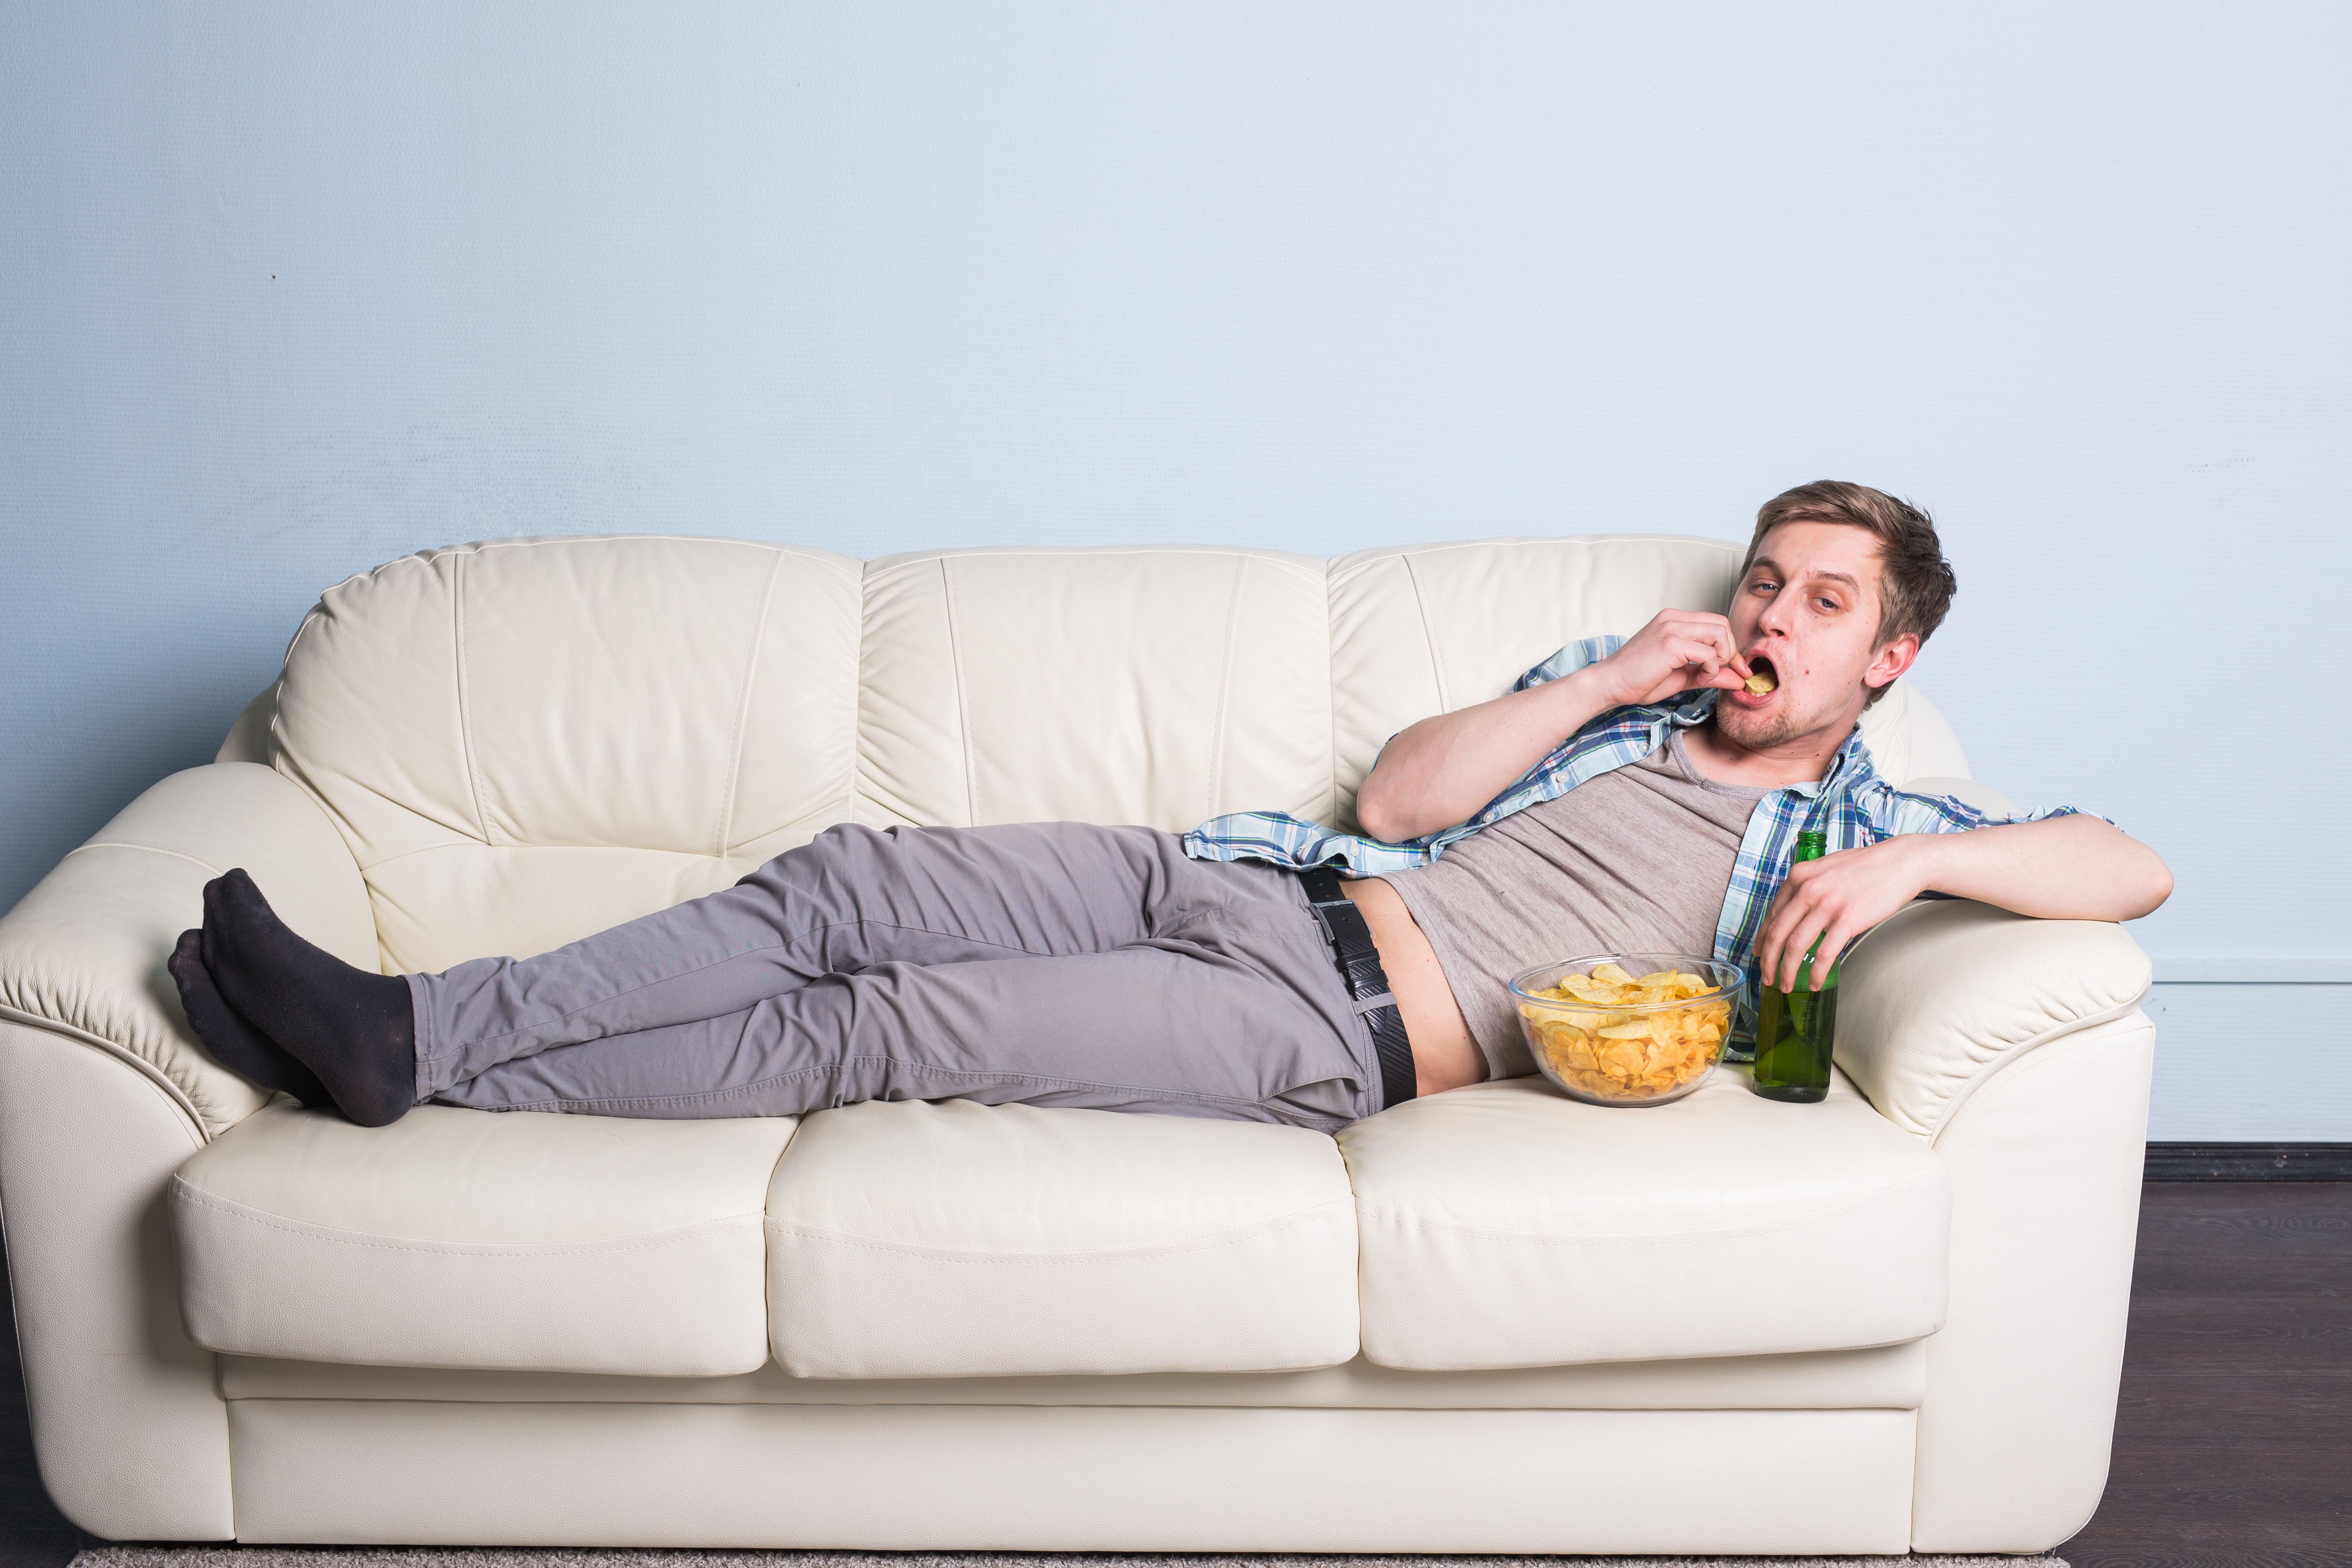 Ничем просто лежу на диване. Толстяк лежит на диване. Мужчина на диване с пивом. Мужикмна Ливане с пмвом. Ленивый человек.